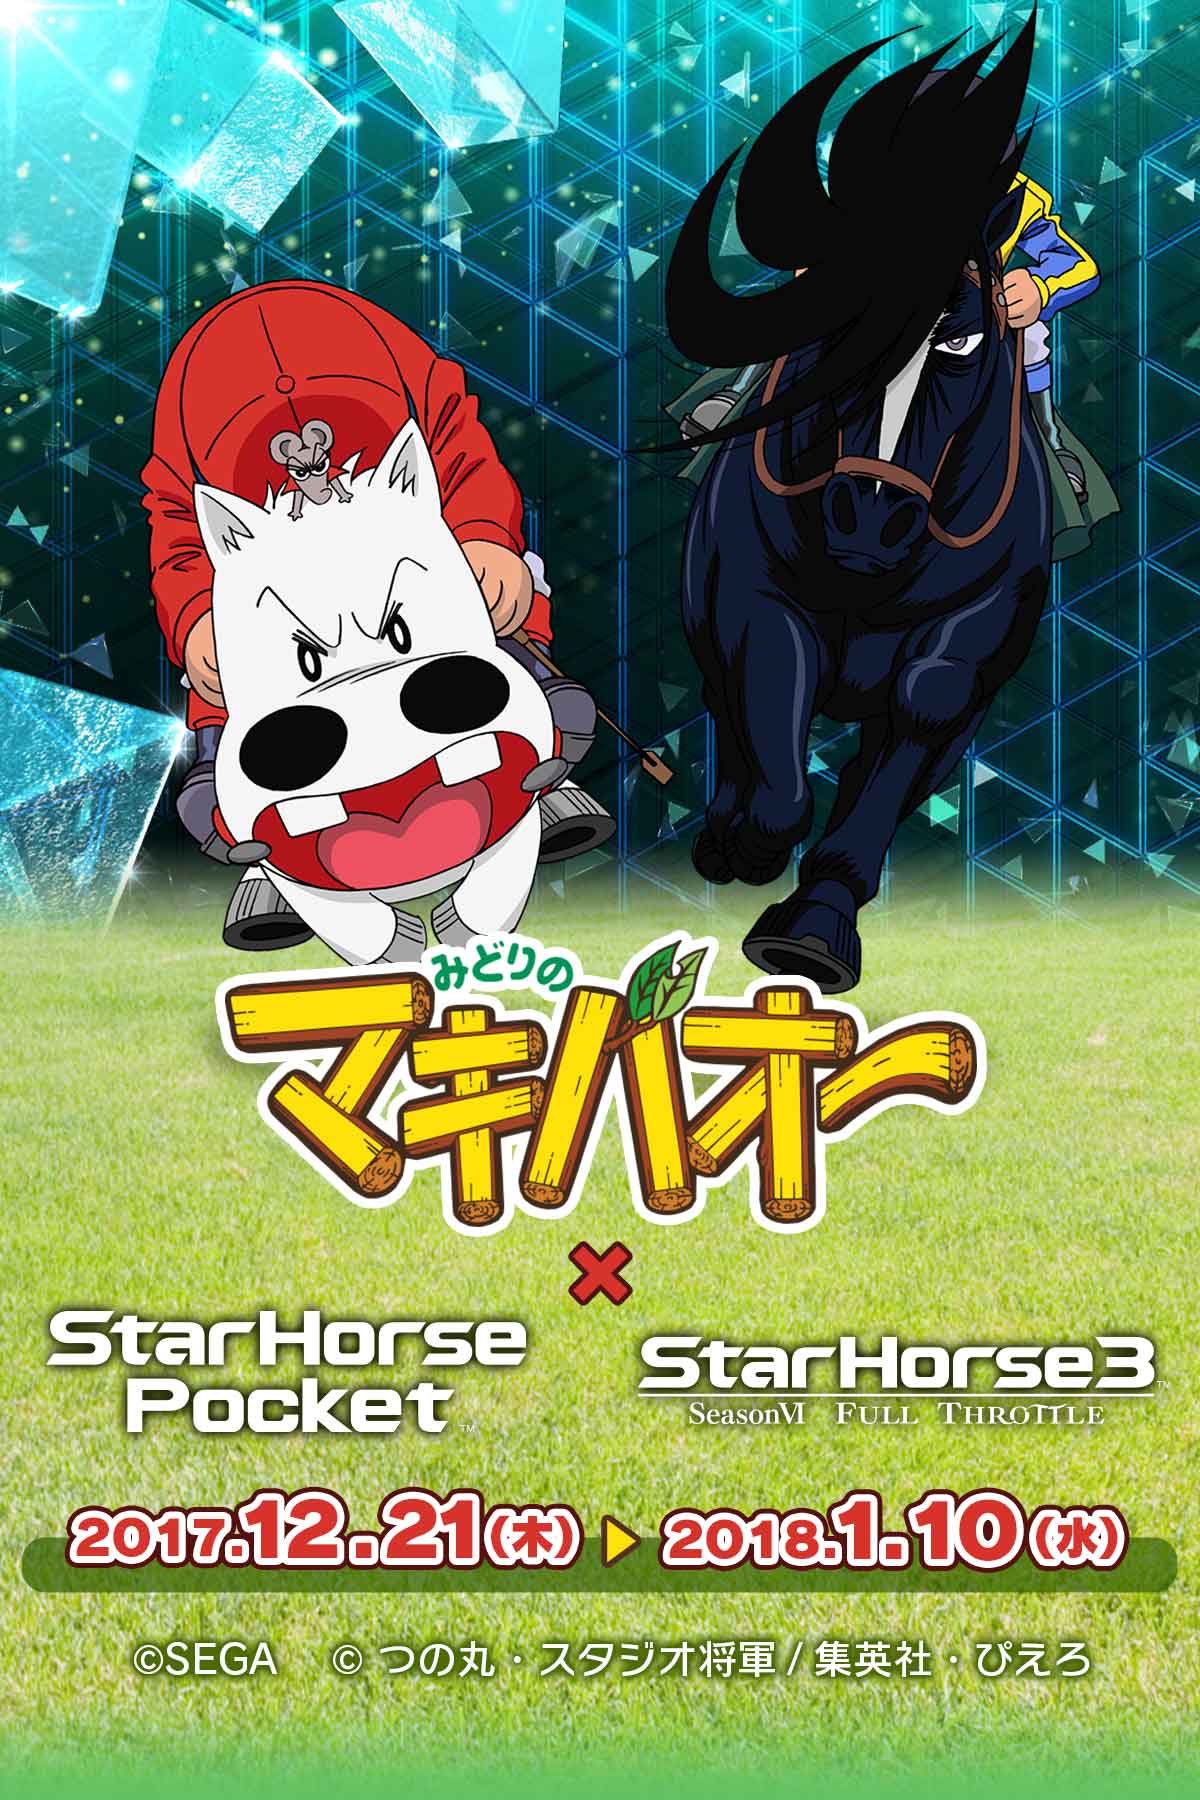 みどりのマキバオー Starhorseシリーズコラボキャンペーン Starhorseportal スターホースポータルサイト 競馬ゲーム セガ